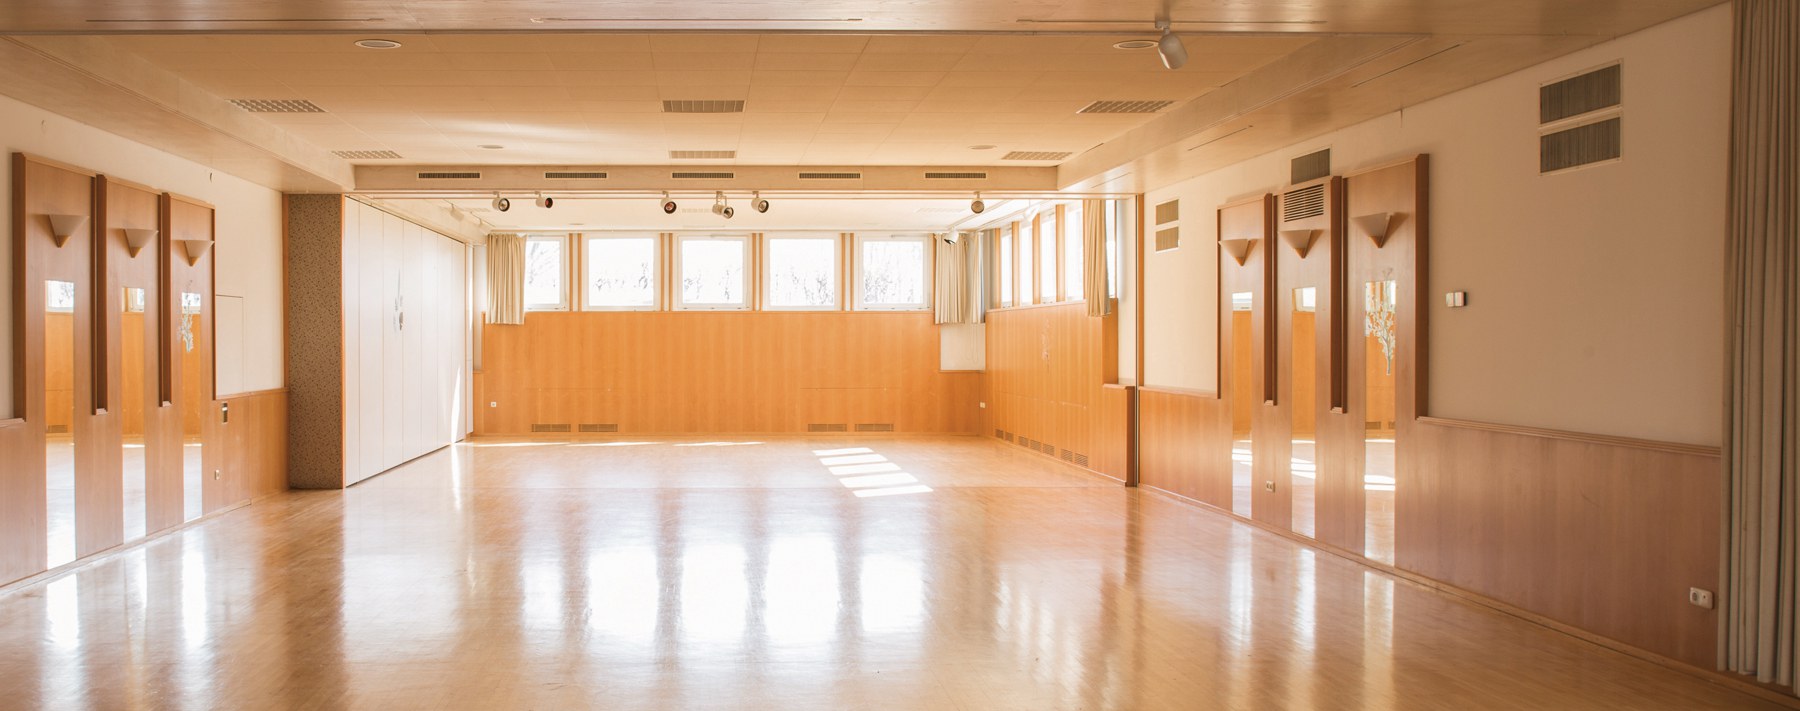 Mitten im Zentrum von Brederis gelegen, bietet der Bresner Saal ideale Voraussetzungen für Bälle, Hochzeiten oder Vereinsversammlungen.